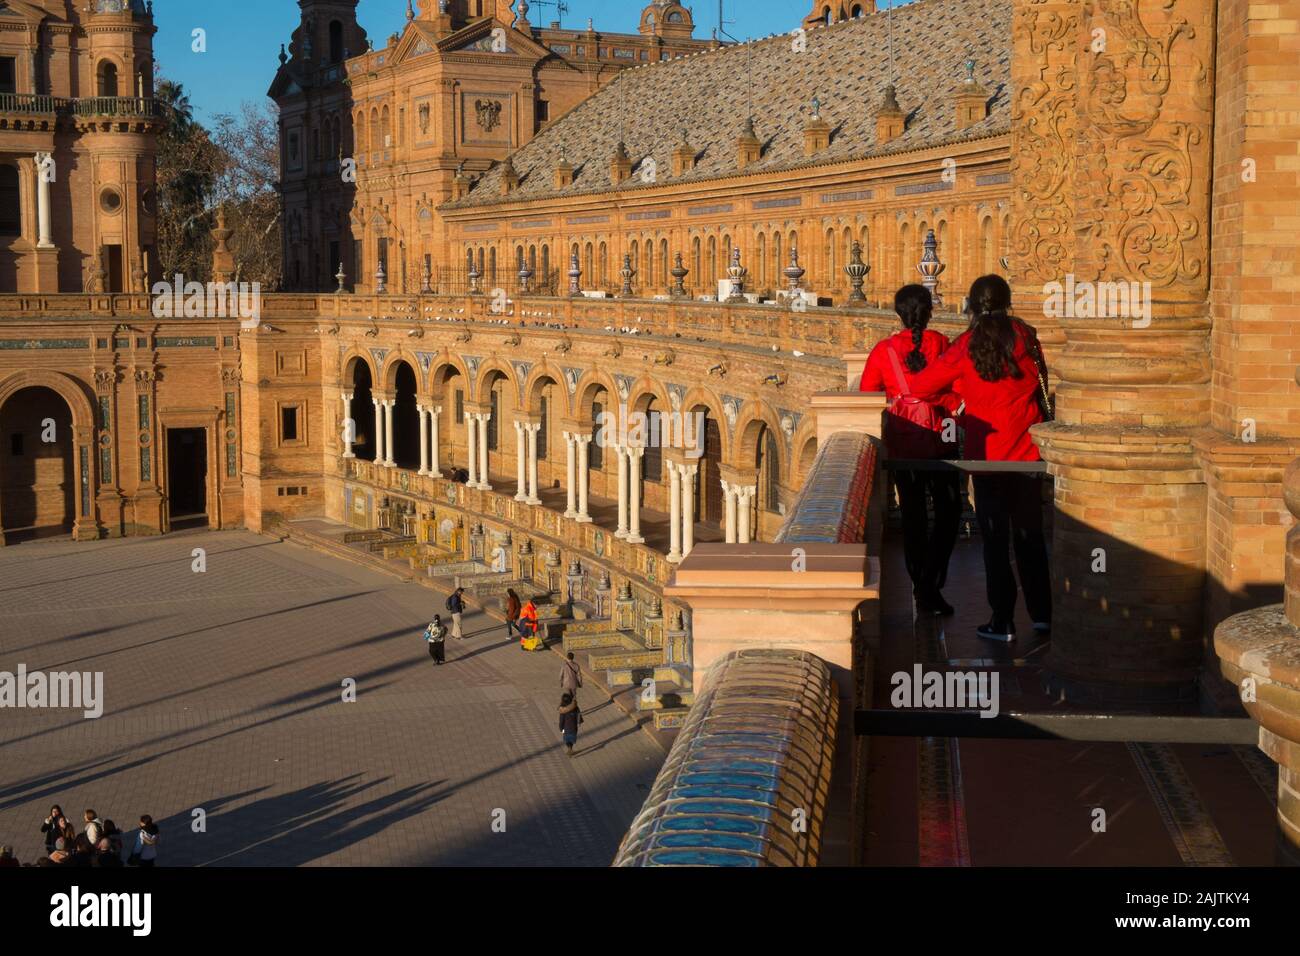 Zwei Frauen in roten Hemden stehen auf einem Balkon an der Plaza Espana, Sevilla, Spanien Stockfoto